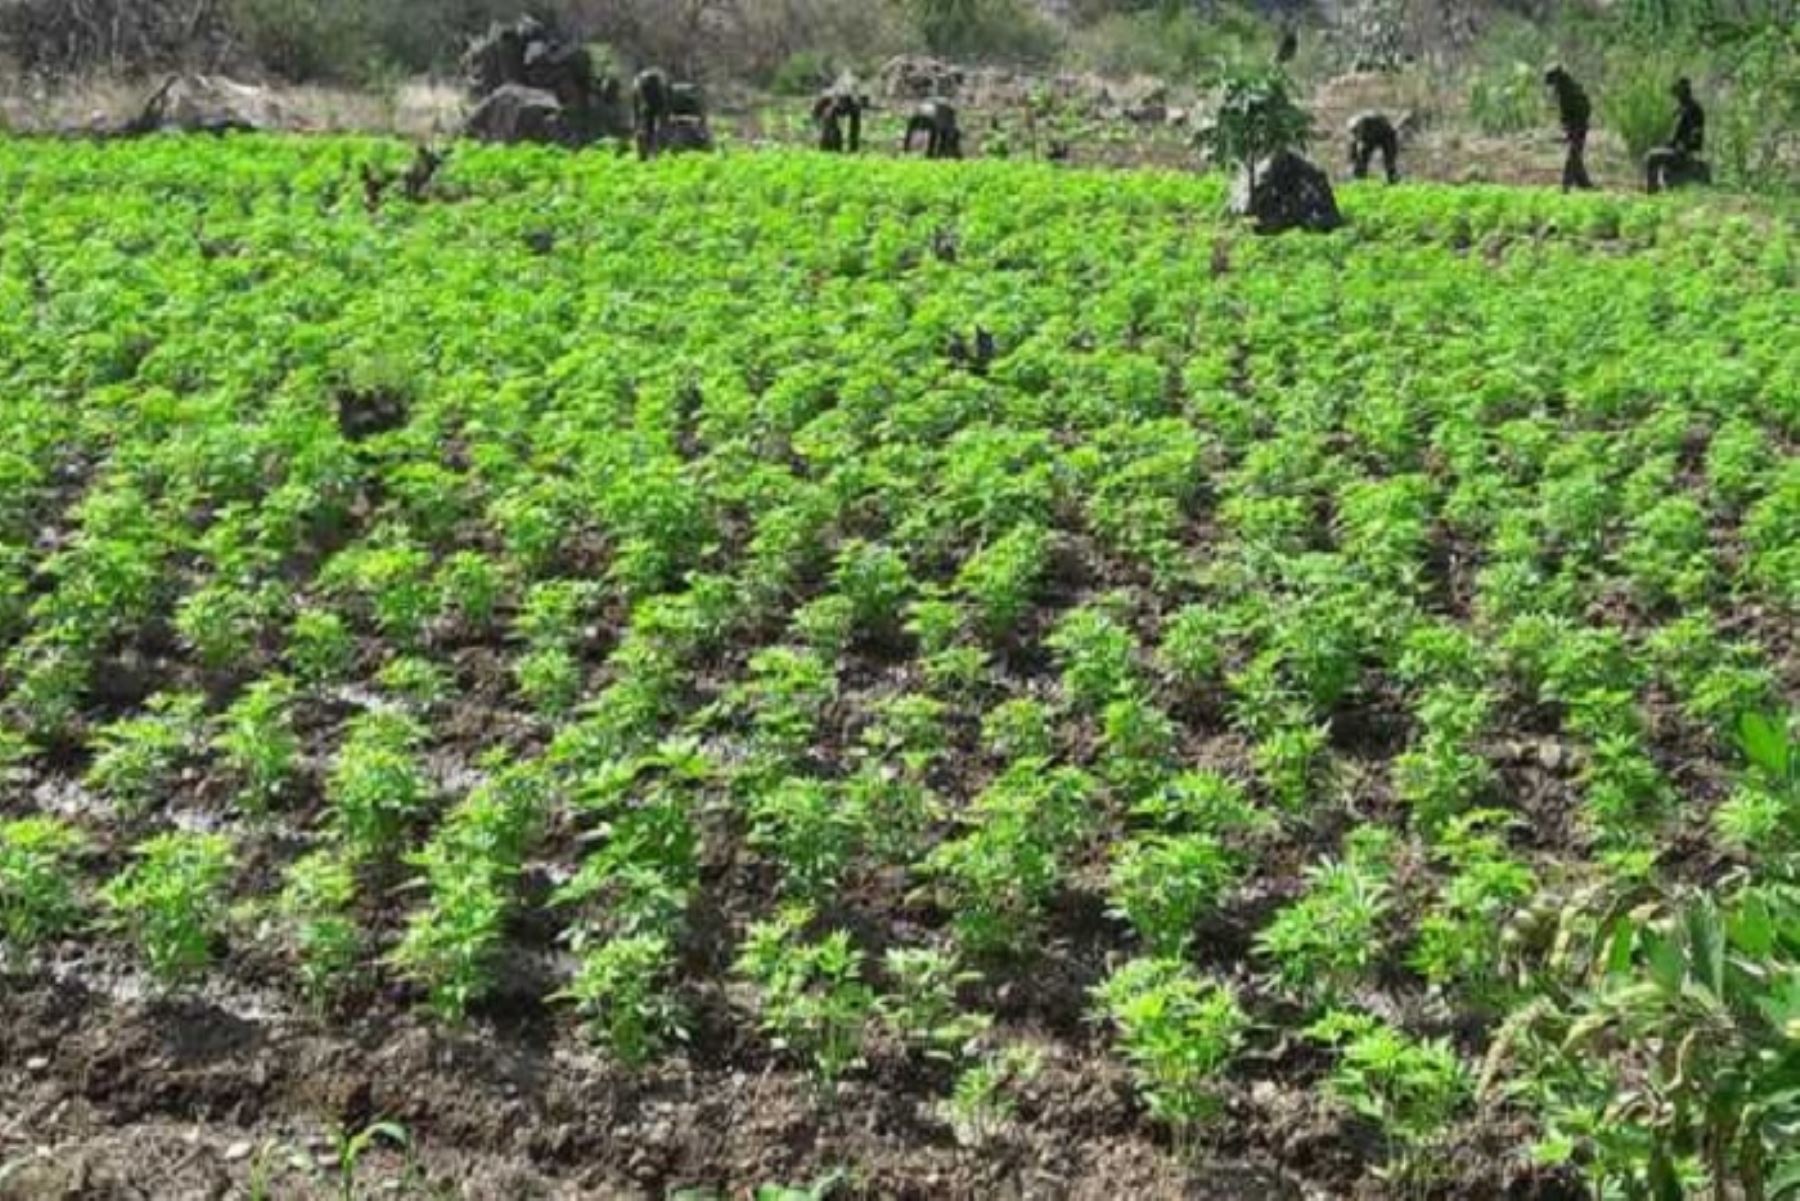 Agentes antidrogas del Frente Policial del Valle de los ríos Apurímac, Ene y Mantaro (FP-Vraem) de la Policía Nacional del Perú (PNP) erradicaron 8,000 plantones de marihuana.